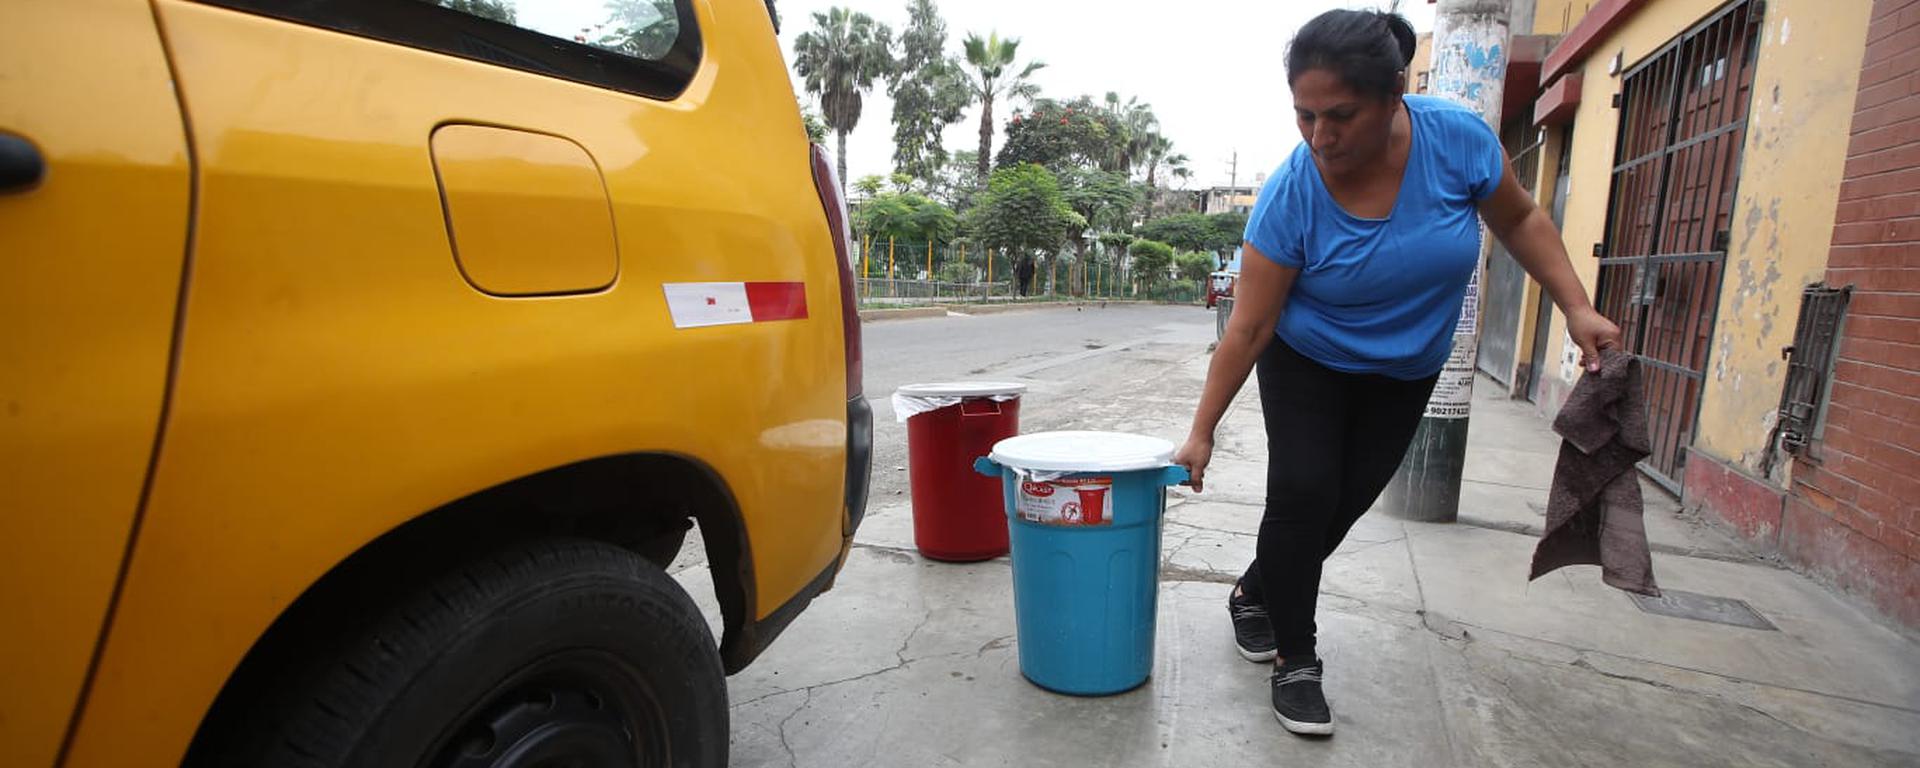 Sin agua: cómo afrontan los vecinos de Lima el masivo corte anunciado por Sedapal